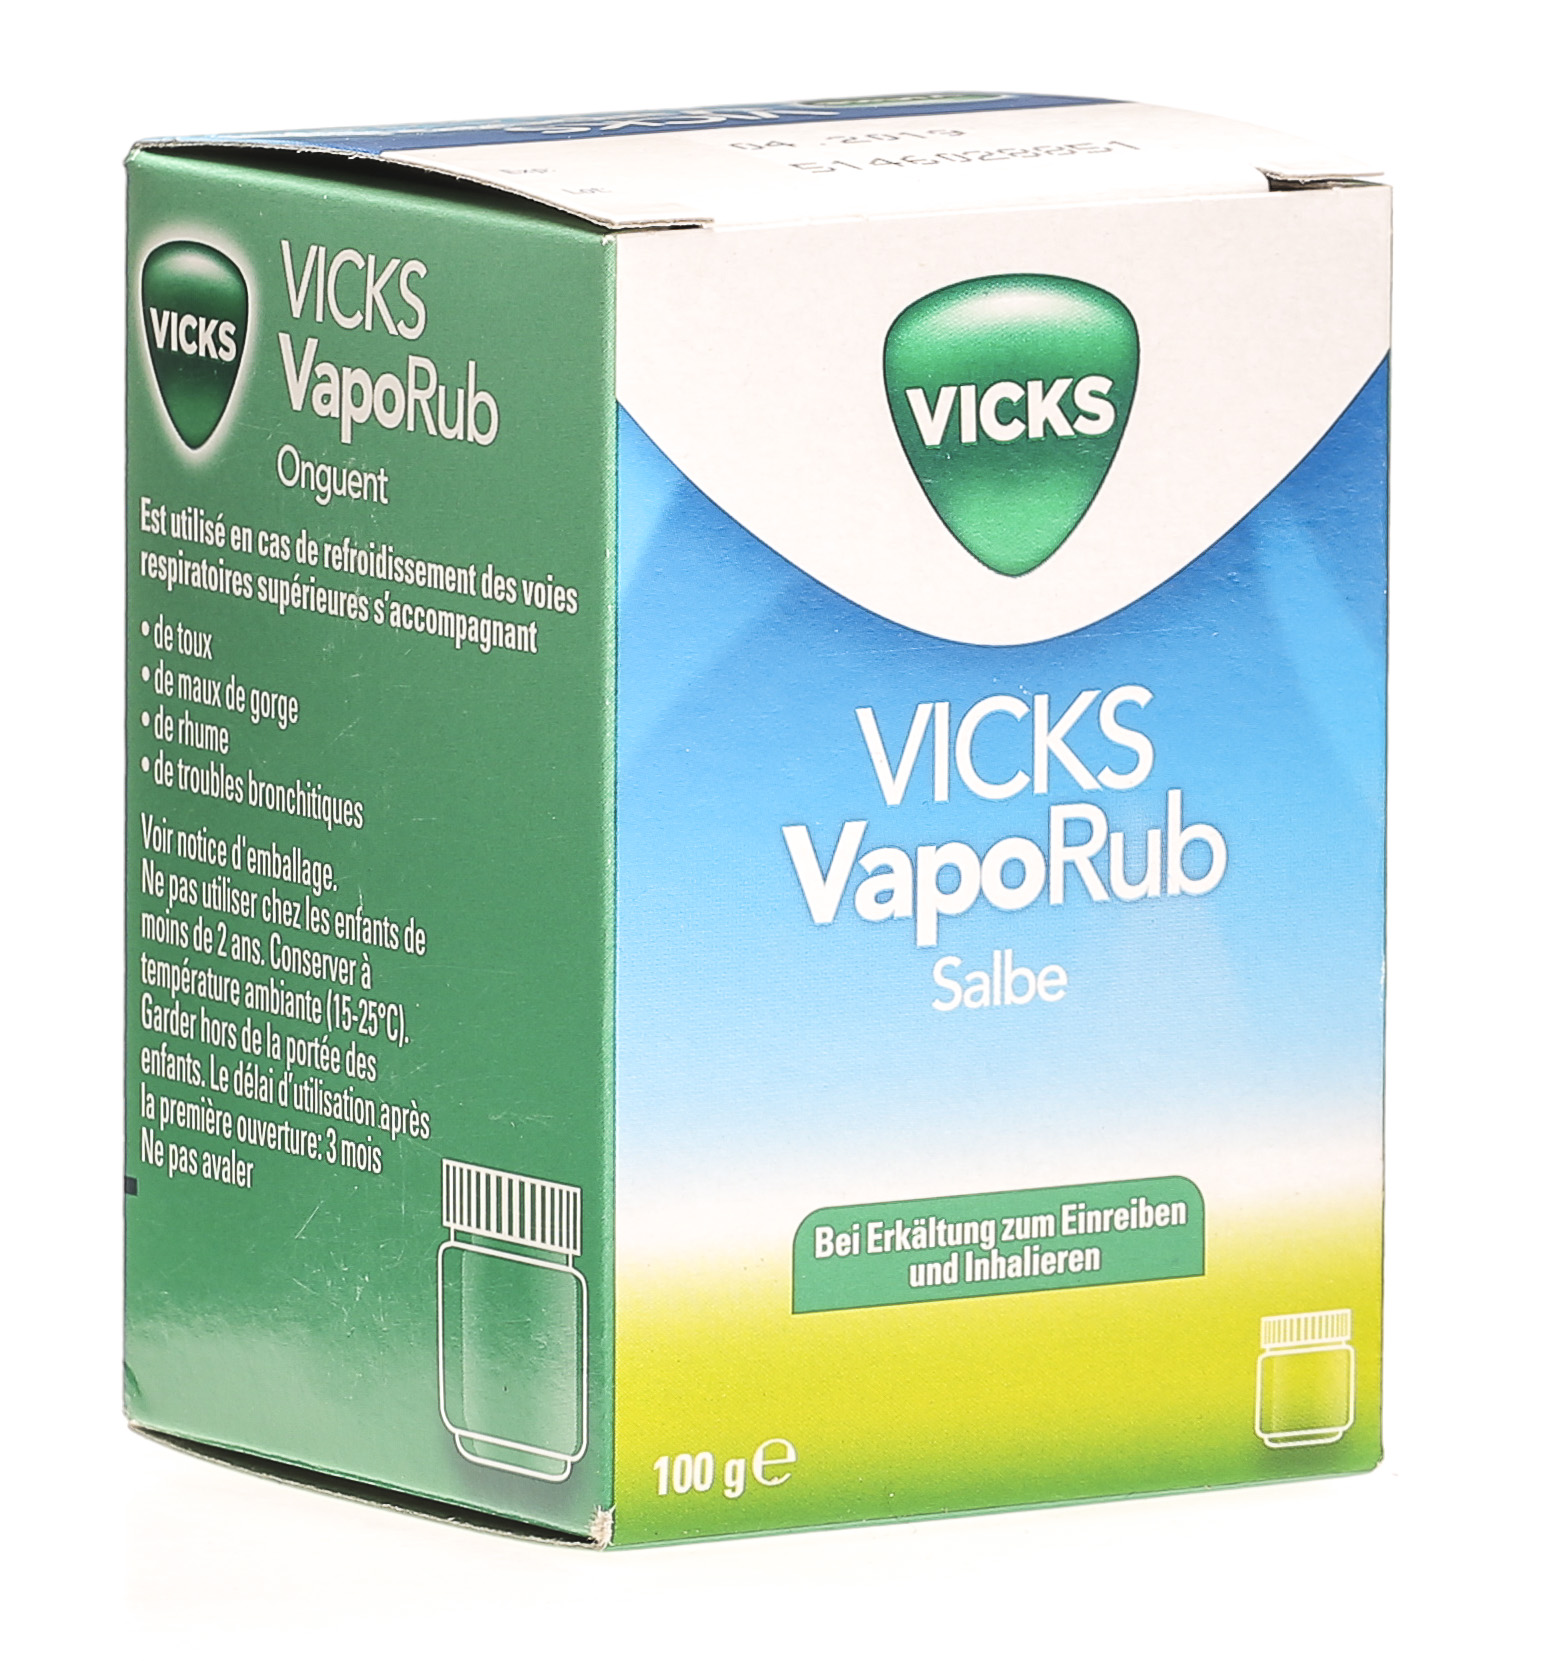 Vicks Vaporub in caso malattie da raffreddamento